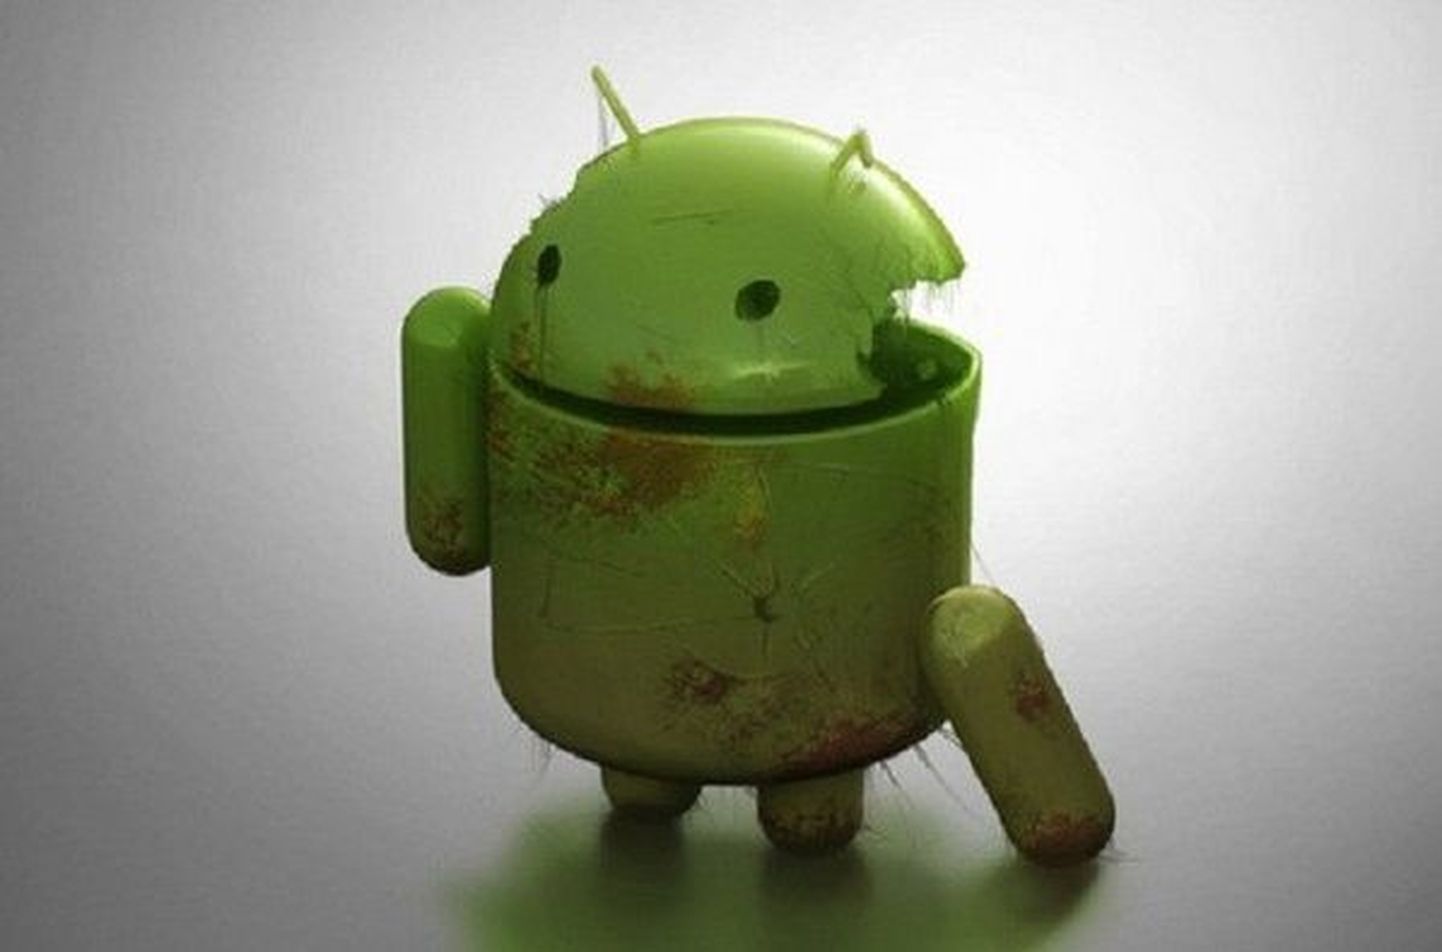 Сломанный Android. Иллюстративное фото.